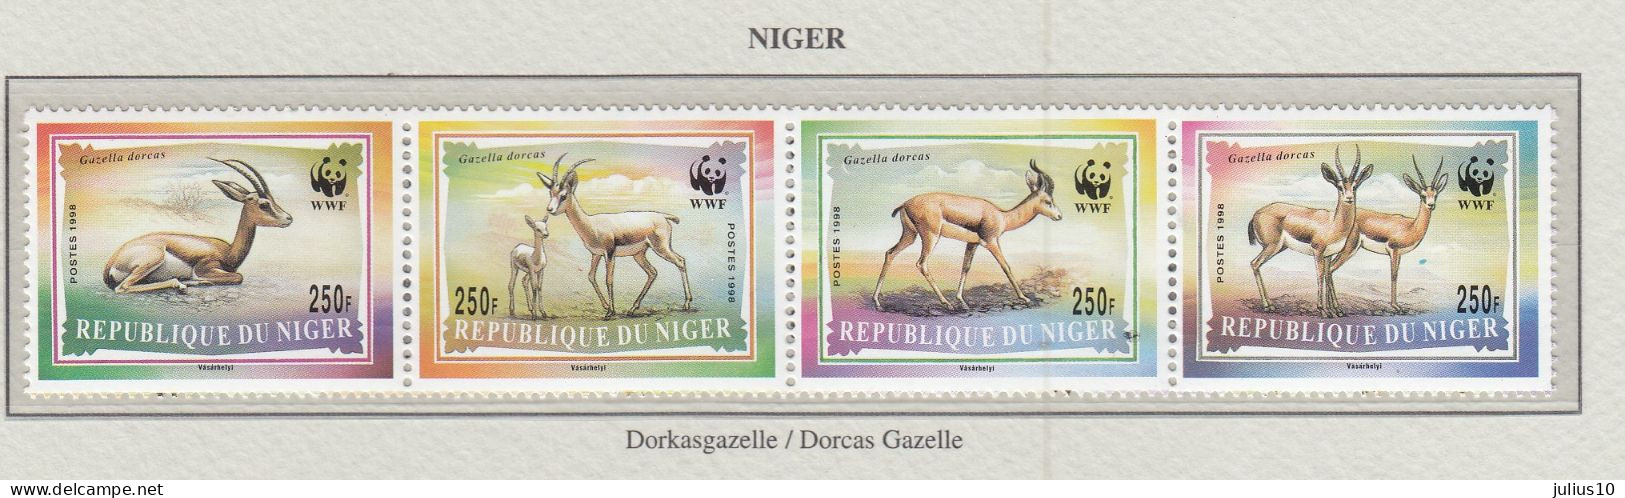 NIGER 1998 WWF Animals Dorcas Gazelle  MiNr. 1460 - 1463 MNH(**) Fauna 594 - Ongebruikt